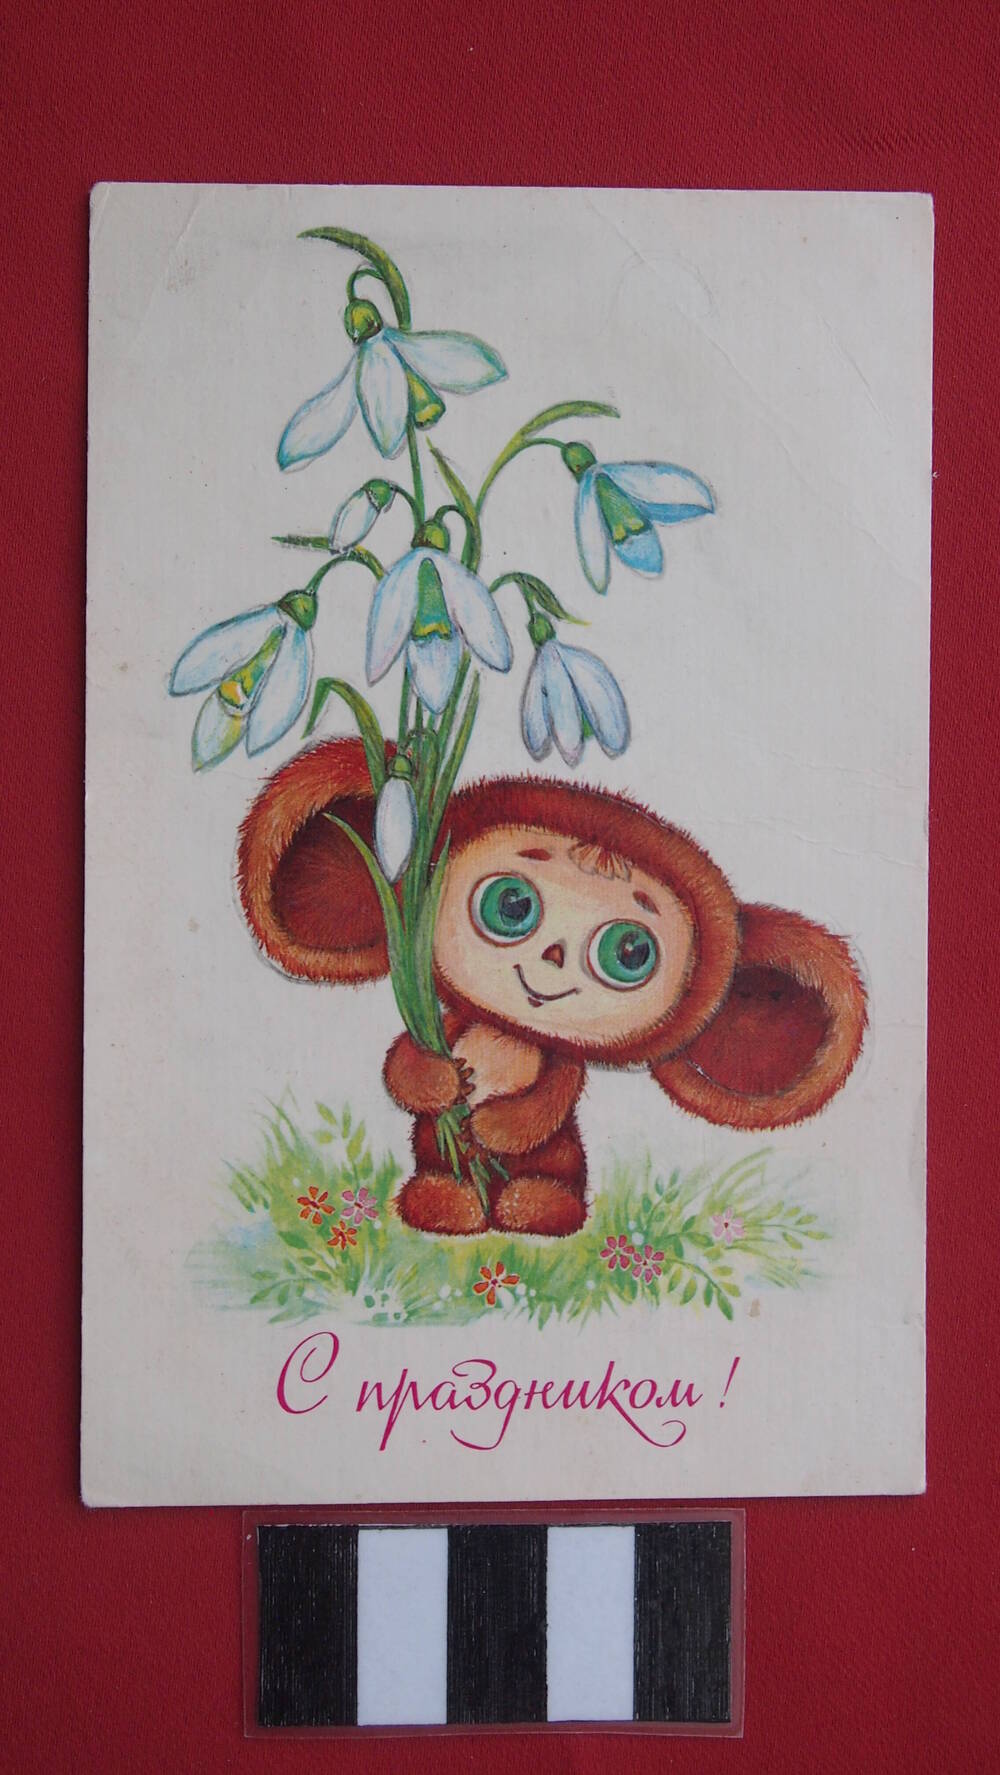 Поздравительная открытка С праздником!, художник О. Юрасова